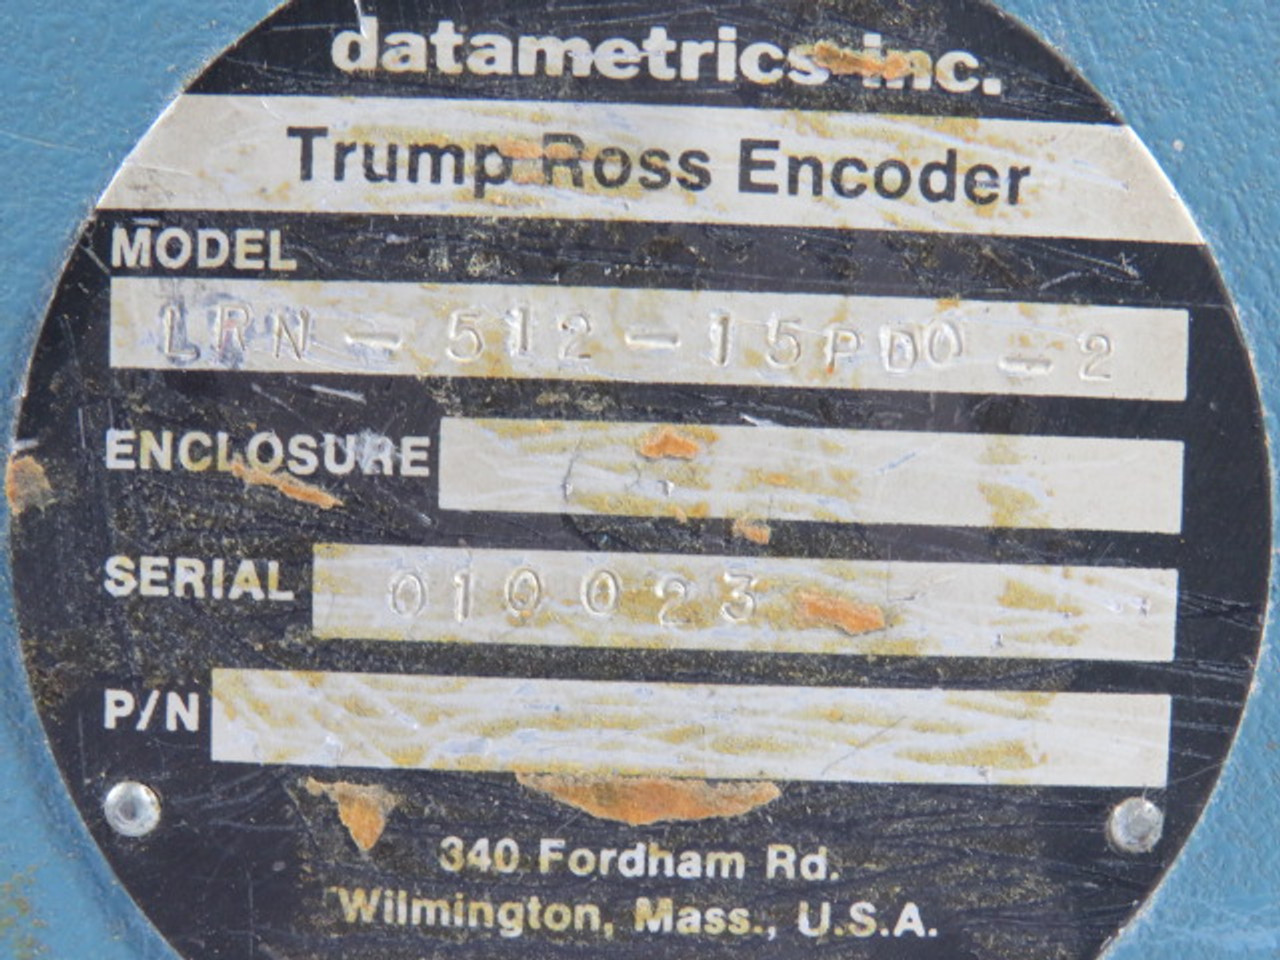 DataMetrics LRN-512-15PDO-2 Trump Ross Encoder 17-Pin USED